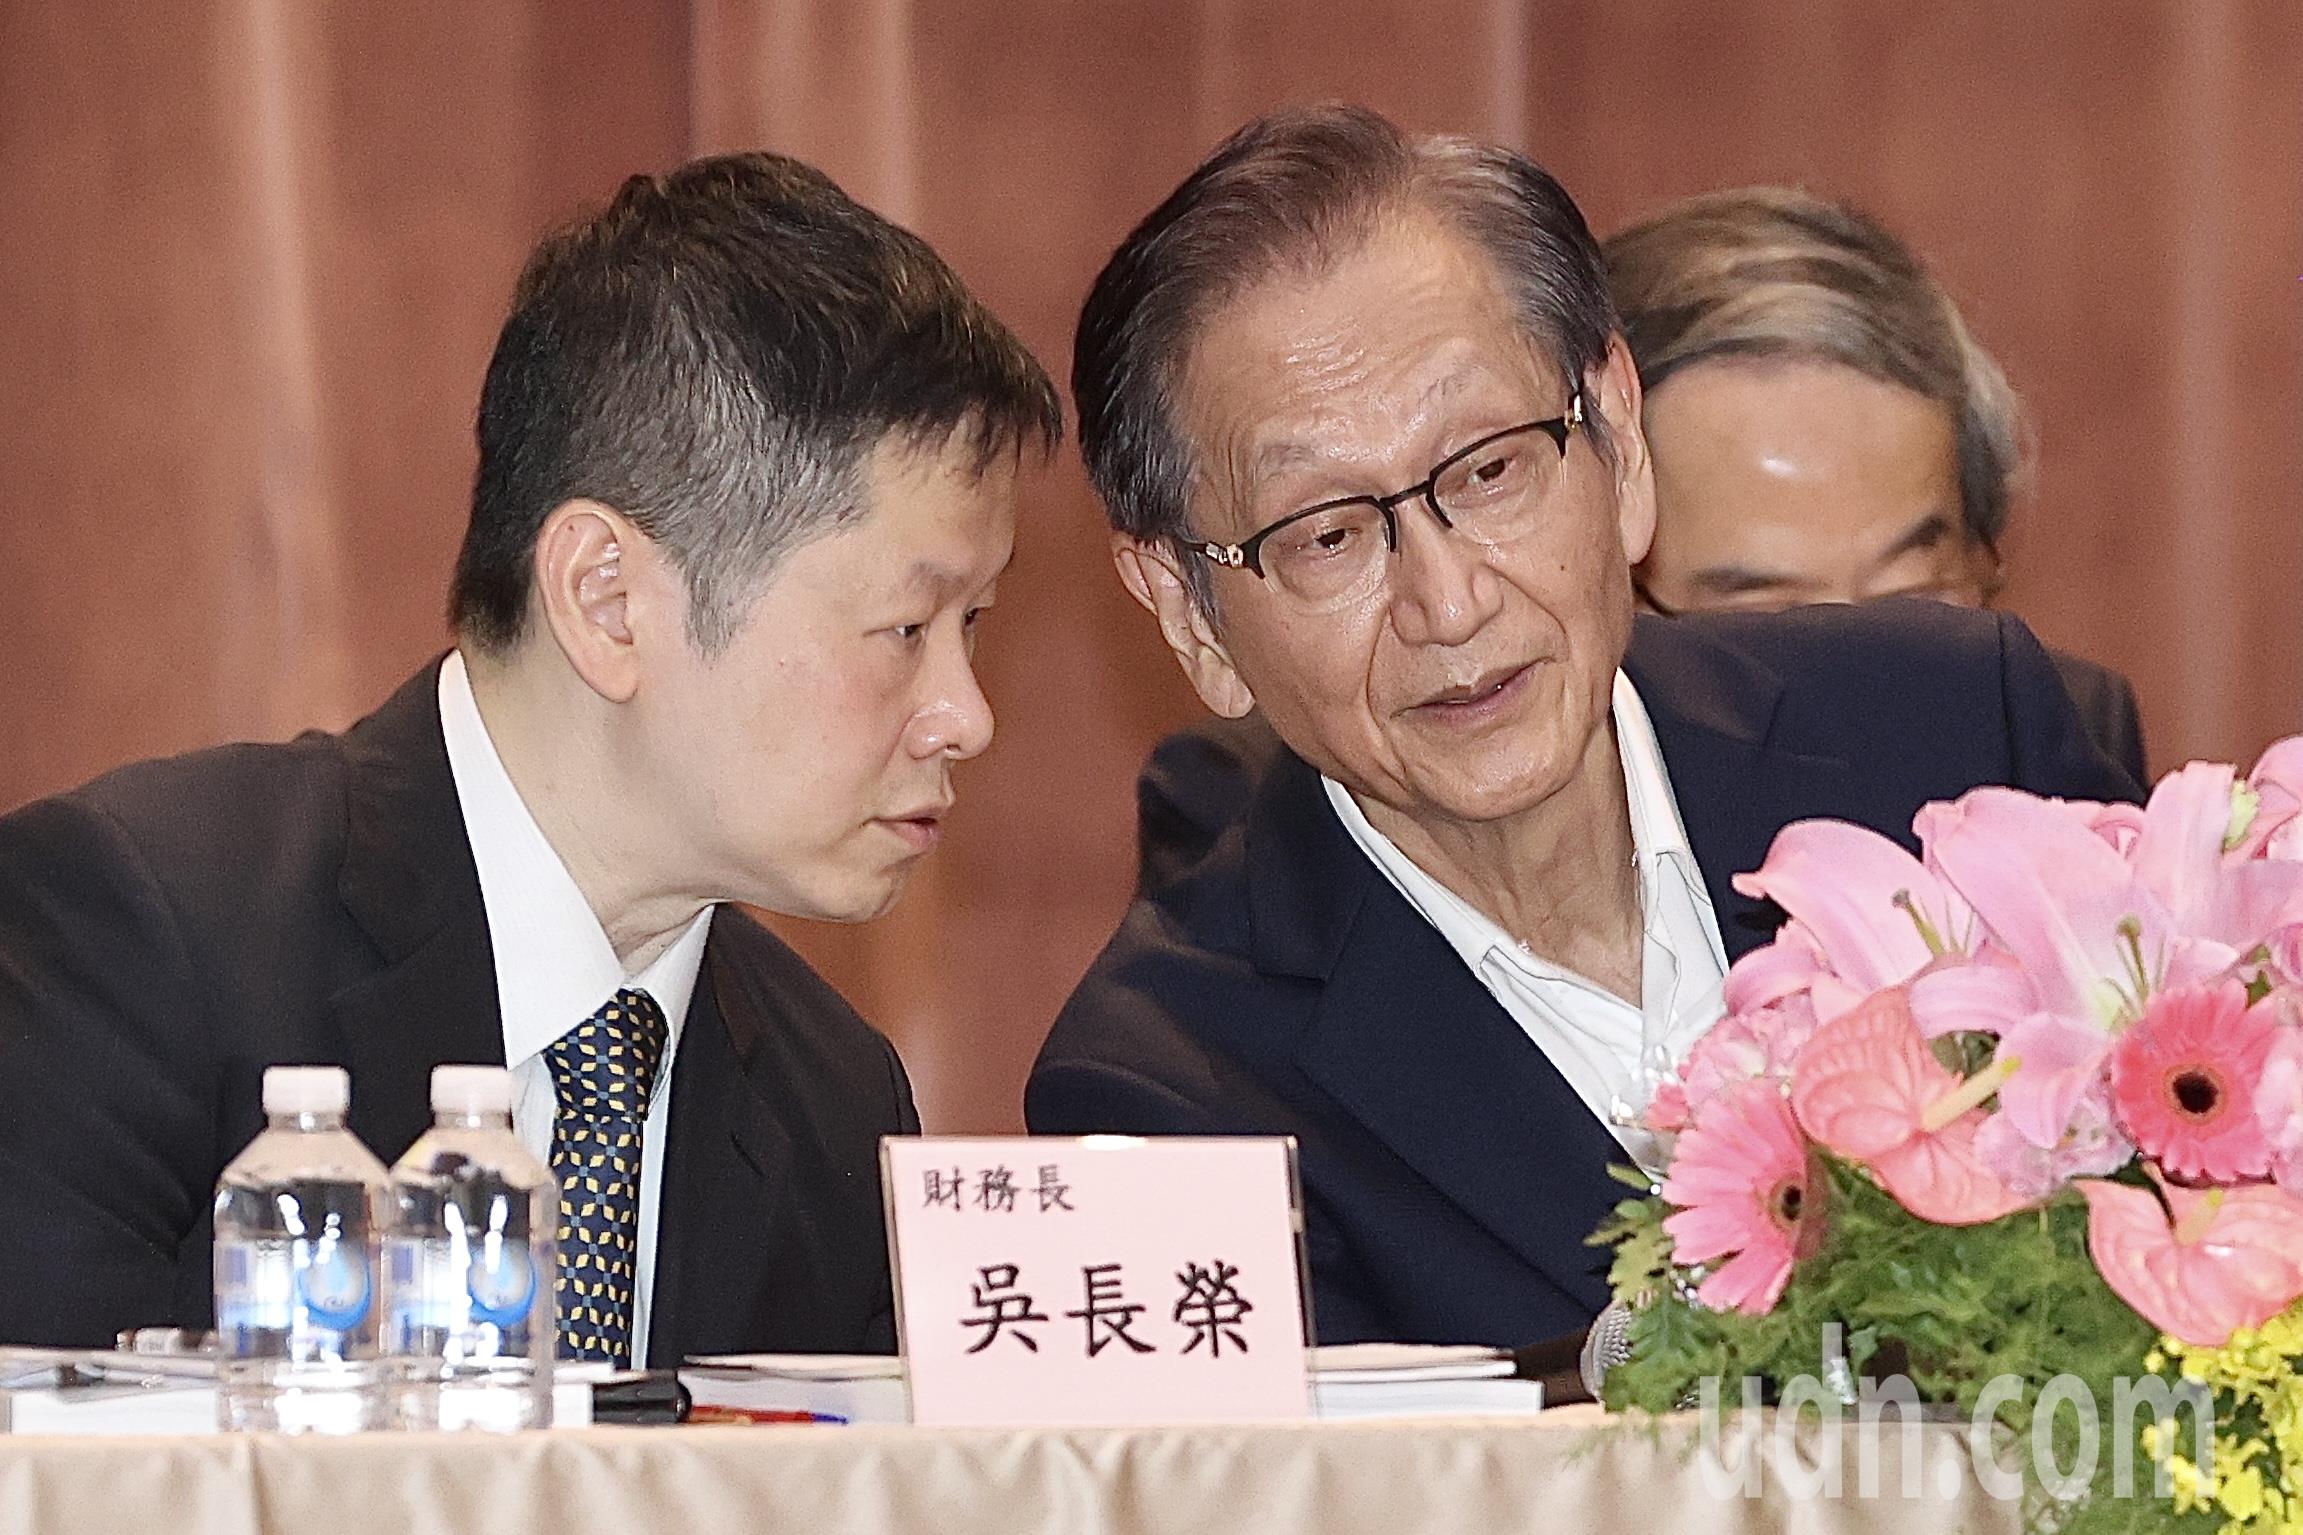 华硕电脑上午在台北举行113年度股东会与股东会后记者会，董事长施崇棠（右）主持、财务长吴长荣（左）出席，两人交换意见。记者林伯东／摄影